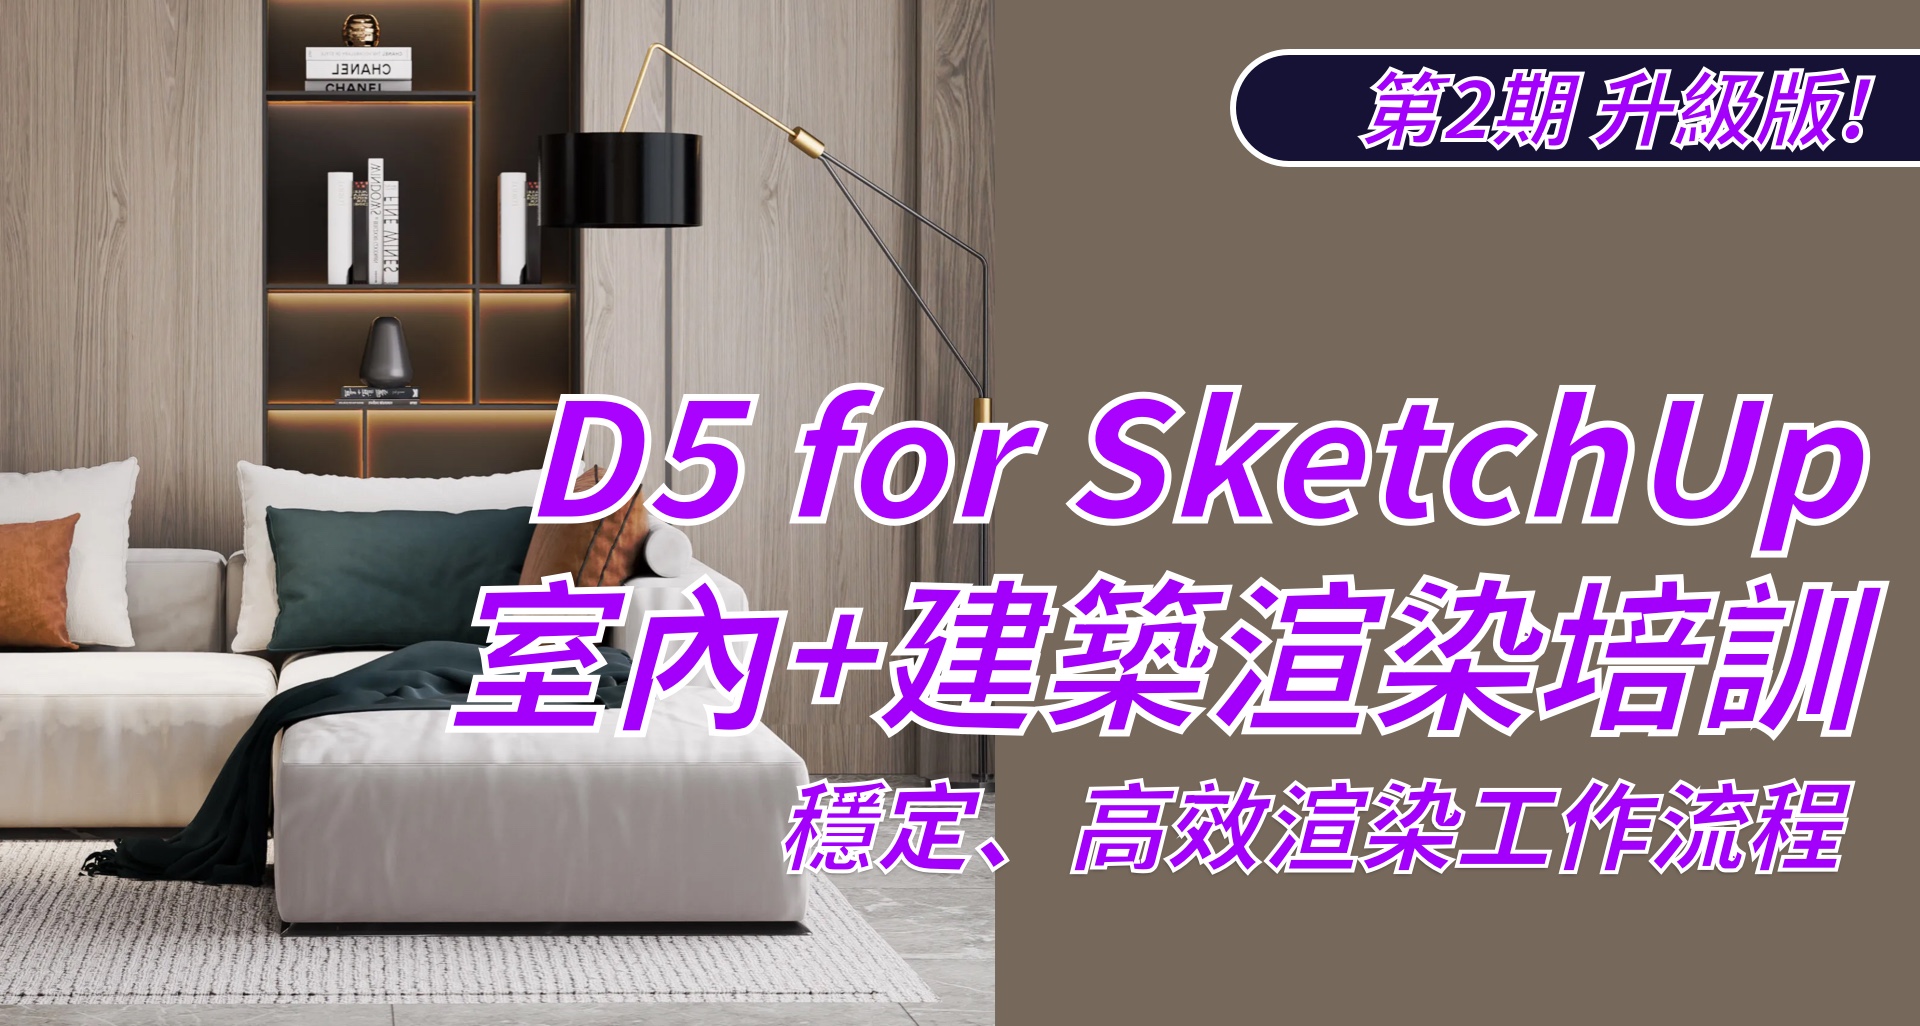 D5-for-SketchUp-室内渲染培训备份-2